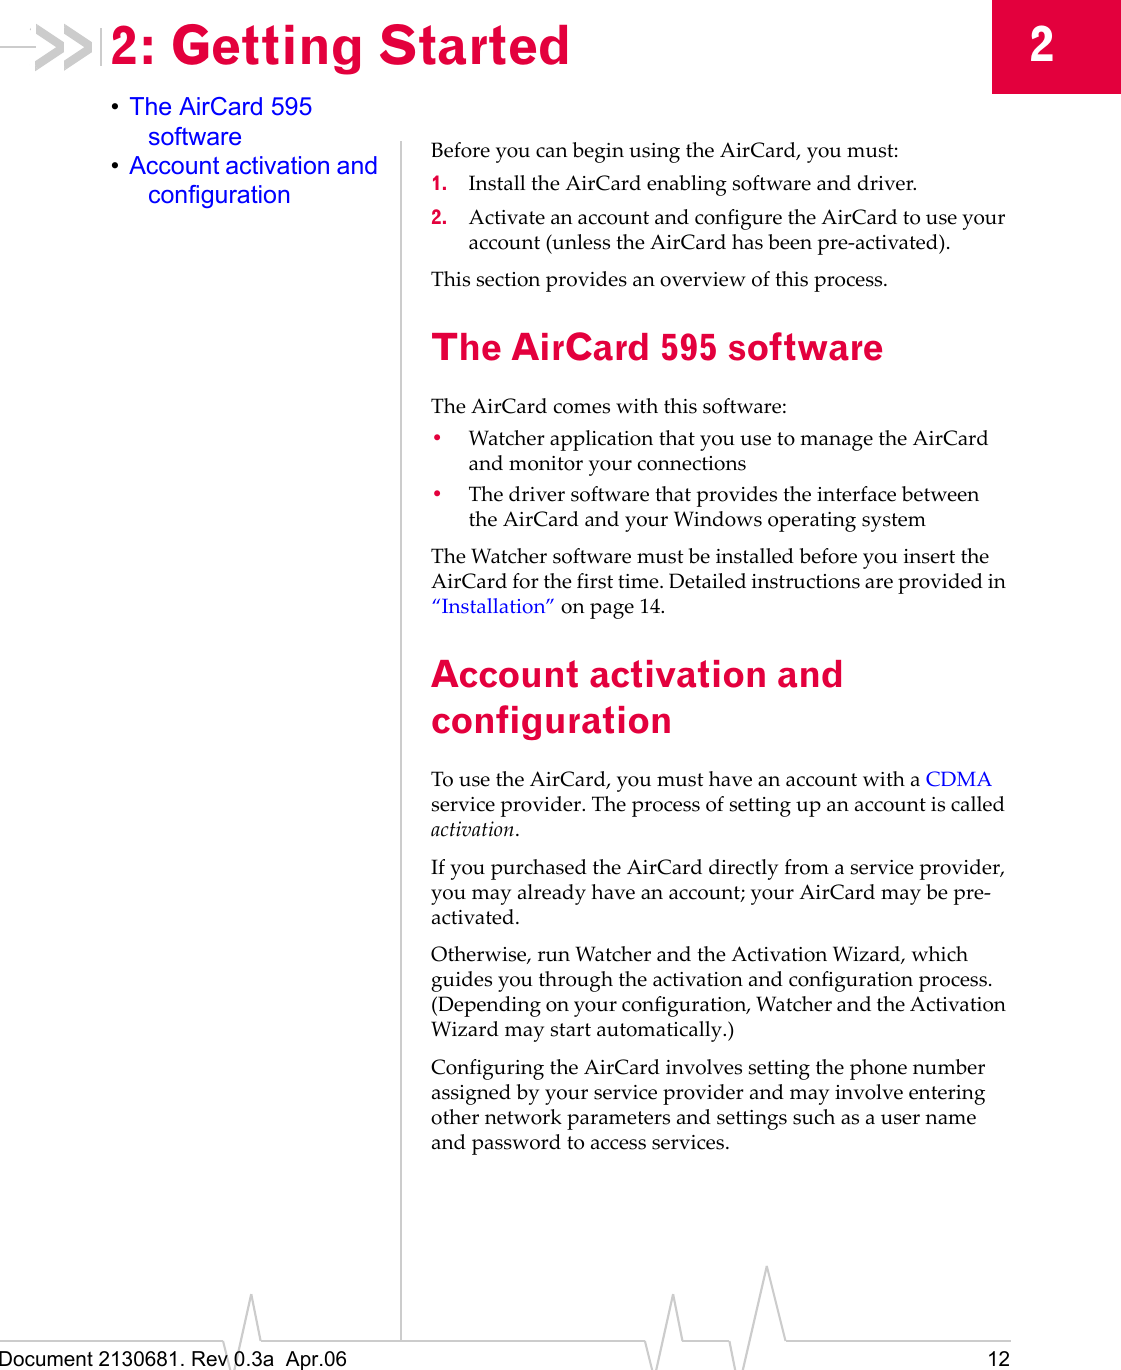 Document 2130681. Rev 0.3a  Apr.06 1222: Getting Started•The AirCard 595 software•Account activation and configurationBeforeȱyouȱcanȱbeginȱusingȱtheȱAirCard,ȱyouȱmust:1. InstallȱtheȱAirCardȱenablingȱsoftwareȱandȱdriver.2. ActivateȱanȱaccountȱandȱconfigureȱtheȱAirCardȱtoȱuseȱyourȱaccountȱ(unlessȱtheȱAirCardȱhasȱbeenȱpreȬactivated).Thisȱsectionȱprovidesȱanȱoverviewȱofȱthisȱprocess.The AirCard 595 softwareTheȱAirCardȱcomesȱwithȱthisȱsoftware:•WatcherȱapplicationȱthatȱyouȱuseȱtoȱmanageȱtheȱAirCardȱandȱmonitorȱyourȱconnections•TheȱdriverȱsoftwareȱthatȱprovidesȱtheȱinterfaceȱbetweenȱtheȱAirCardȱandȱyourȱWindowsȱoperatingȱsystemTheȱWatcherȱsoftwareȱmustȱbeȱinstalledȱbeforeȱyouȱinsertȱtheȱAirCardȱforȱtheȱfirstȱtime.ȱDetailedȱinstructionsȱareȱprovidedȱinȱ“Installation”ȱonȱpage 14.Account activation and configurationToȱuseȱtheȱAirCard,ȱyouȱmustȱhaveȱanȱaccountȱwithȱaȱCDMAȱserviceȱprovider.ȱTheȱprocessȱofȱsettingȱupȱanȱaccountȱisȱcalledȱactivation.IfȱyouȱpurchasedȱtheȱAirCardȱdirectlyȱfromȱaȱserviceȱprovider,ȱyouȱmayȱalreadyȱhaveȱanȱaccount;ȱyourȱAirCardȱmayȱbeȱpreȬactivated.Otherwise,ȱrunȱWatcherȱandȱtheȱActivationȱWizard,ȱwhichȱguidesȱyouȱthroughȱtheȱactivationȱandȱconfigurationȱprocess.ȱ(Dependingȱonȱyourȱconfiguration,ȱWatcherȱandȱtheȱActivationȱWizardȱmayȱstartȱautomatically.)ConfiguringȱtheȱAirCardȱinvolvesȱsettingȱtheȱphoneȱnumberȱassignedȱbyȱyourȱserviceȱproviderȱandȱmayȱinvolveȱenteringȱotherȱnetworkȱparametersȱandȱsettingsȱsuchȱasȱaȱuserȱnameȱandȱpasswordȱtoȱaccessȱservices.